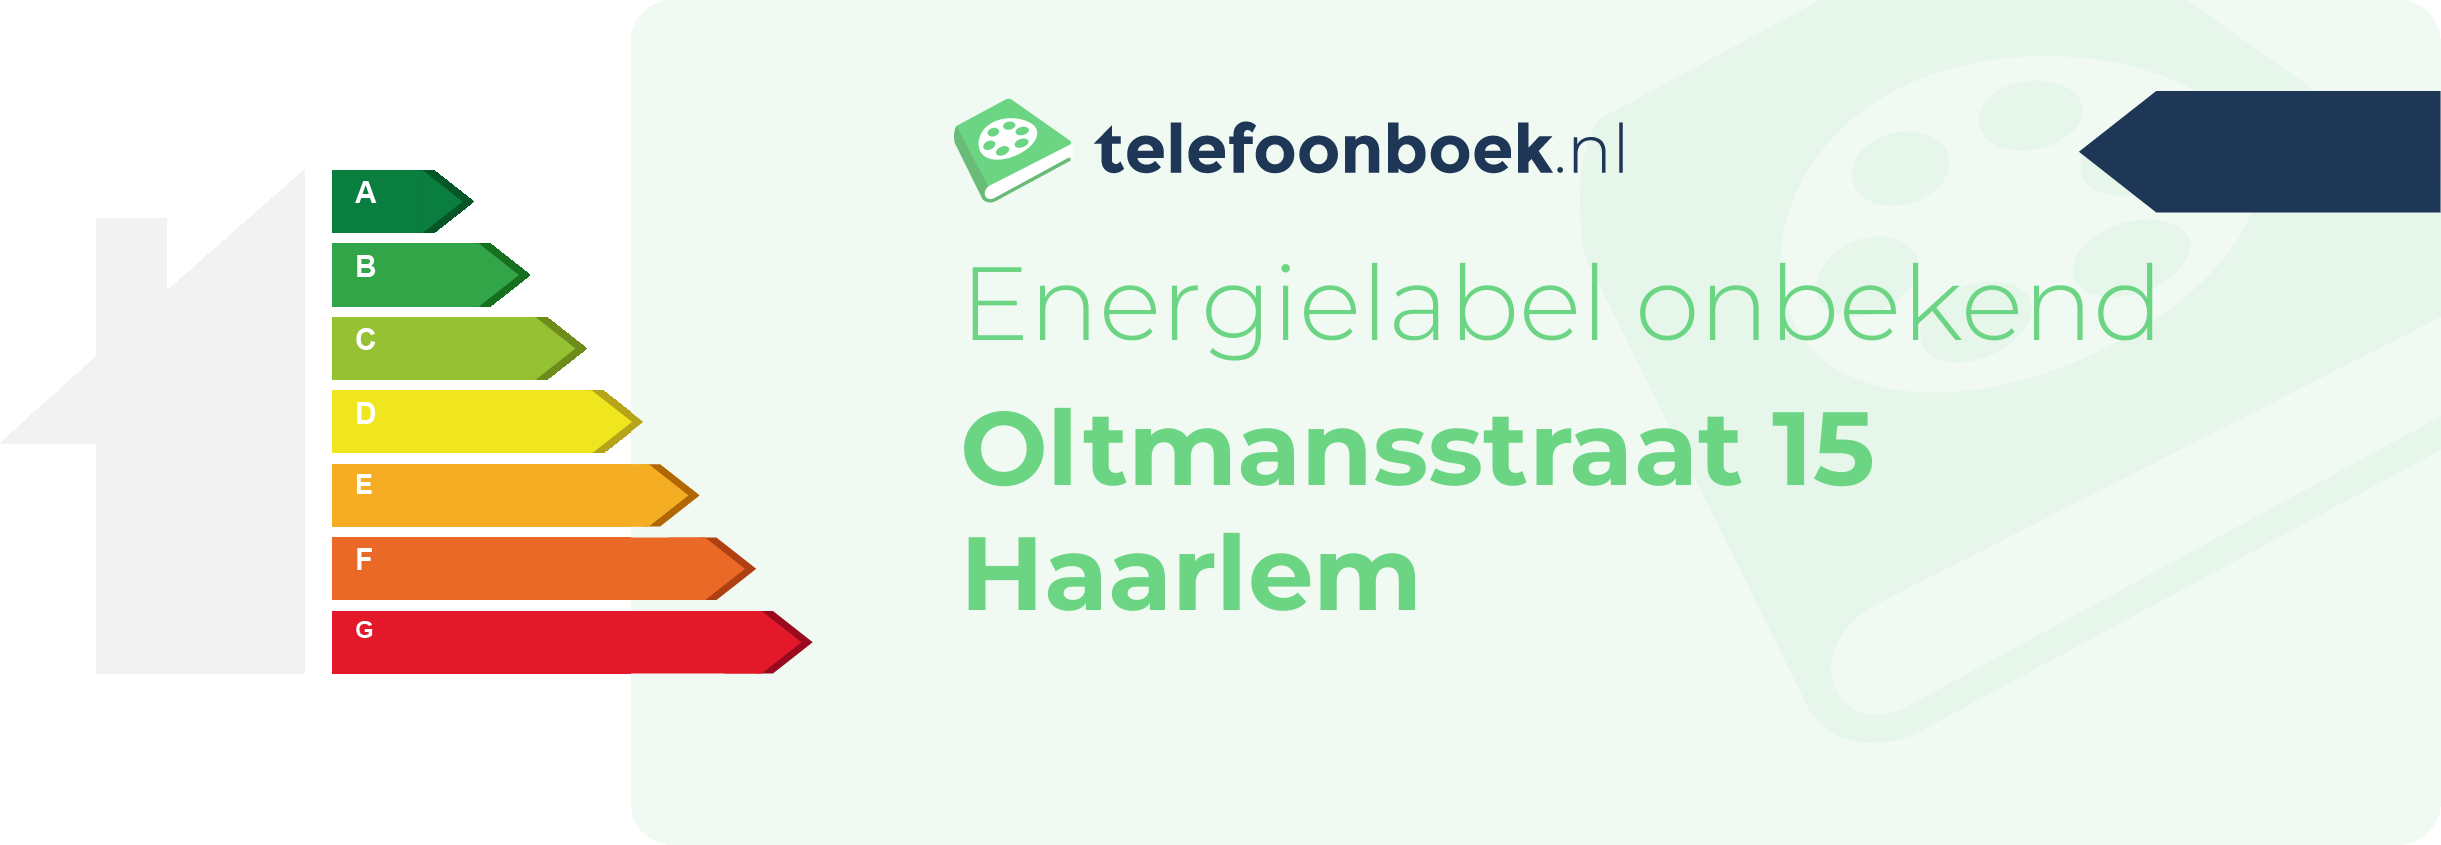 Energielabel Oltmansstraat 15 Haarlem